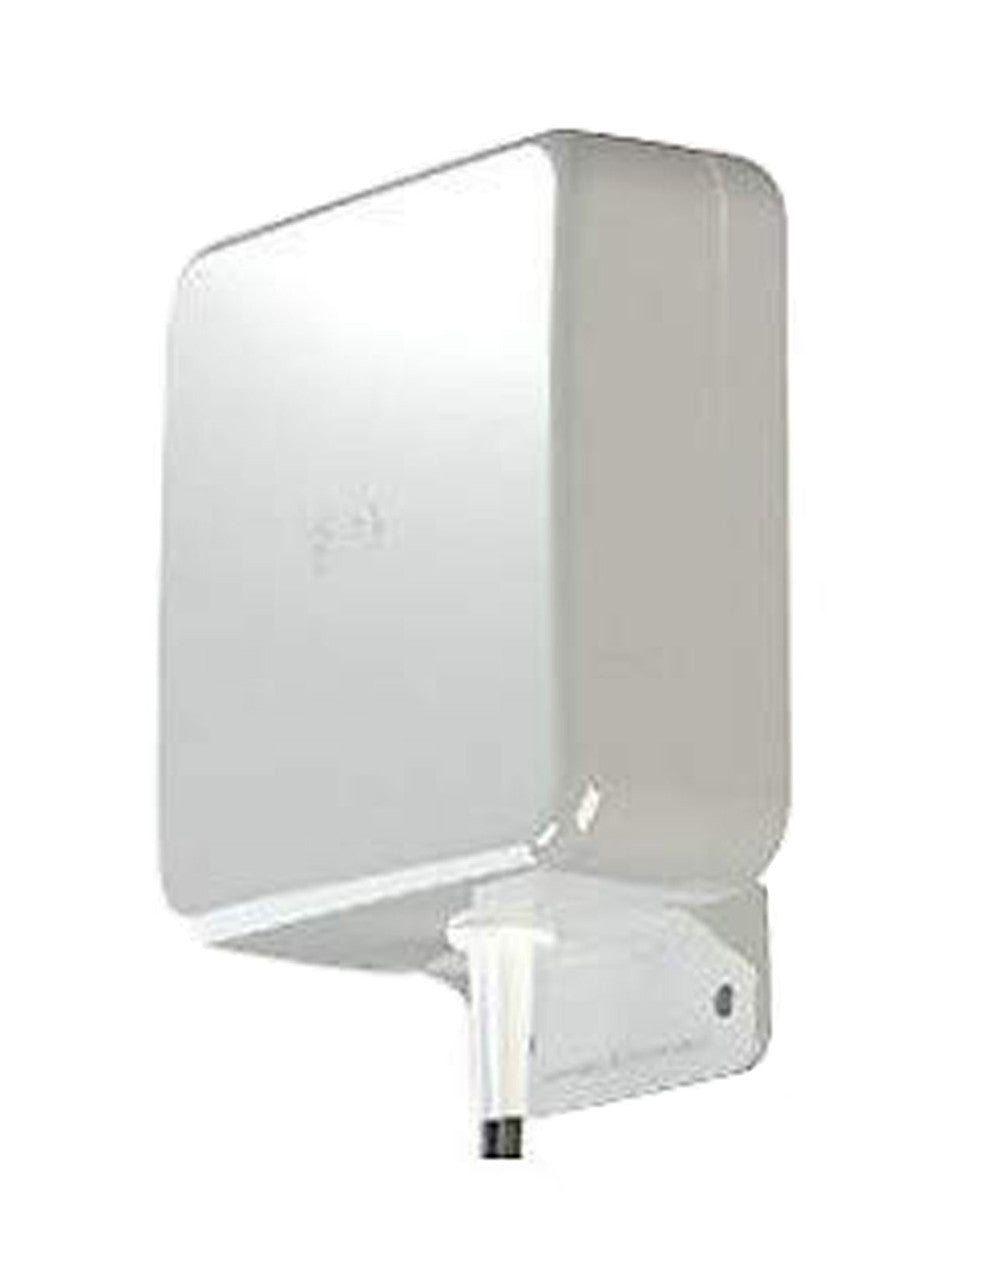 Antenne directionnelle à gain élevé AirLink de Sierra Wireless - 2xLTE, montage mural, 5 m, blanc (6001126)